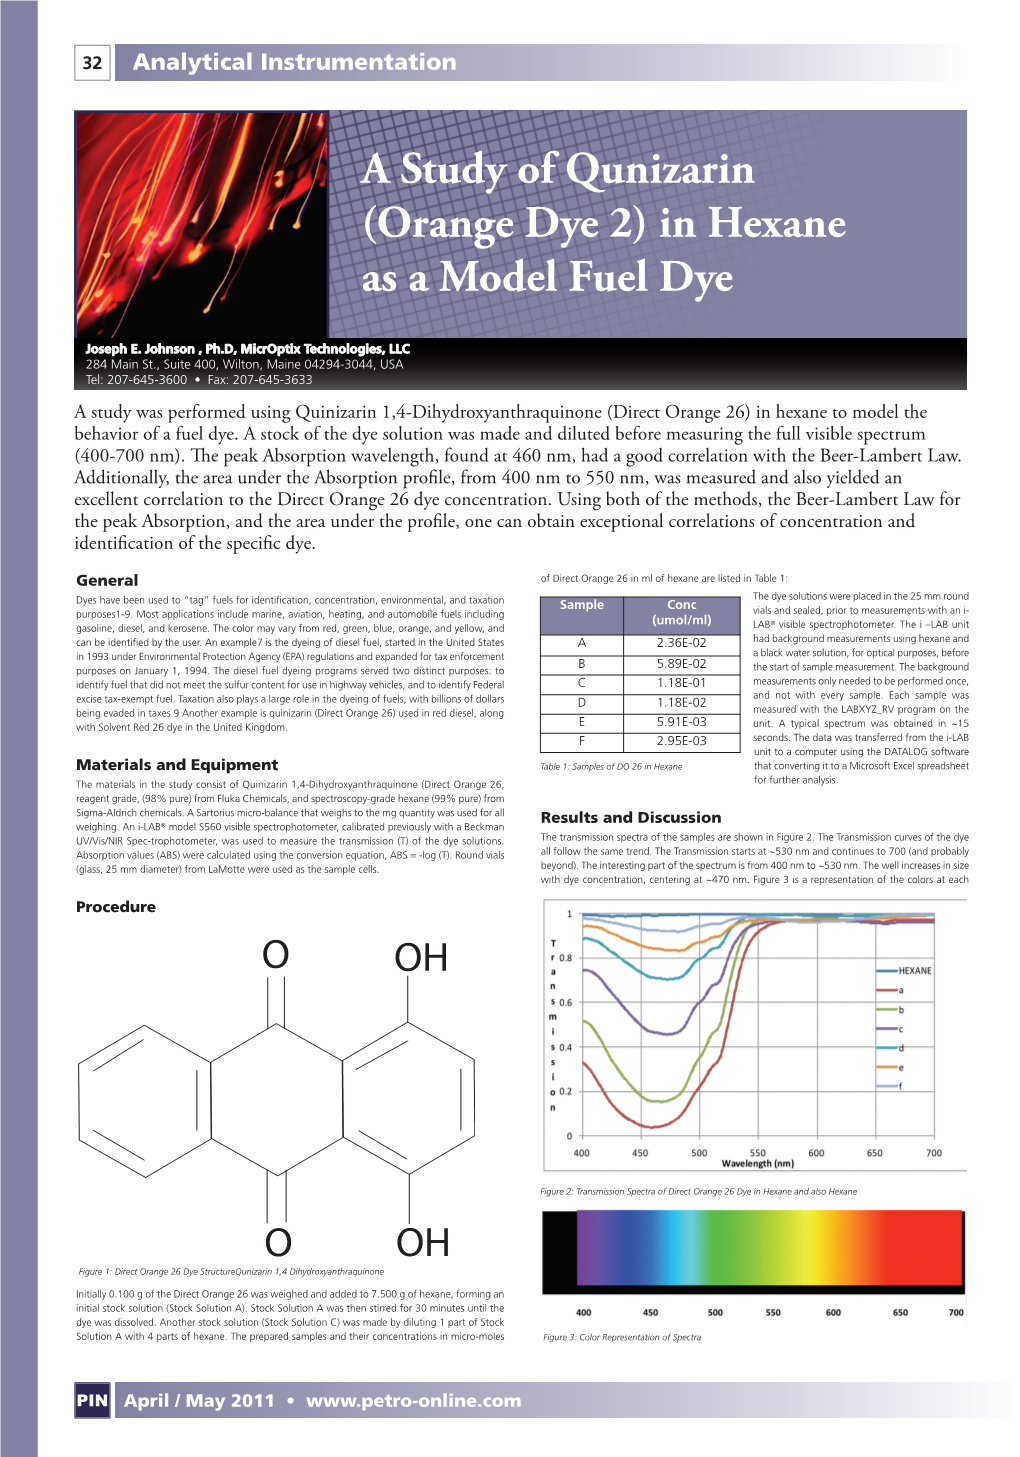 (Orange Dye 2) in Hexane As a Model Fuel Dye